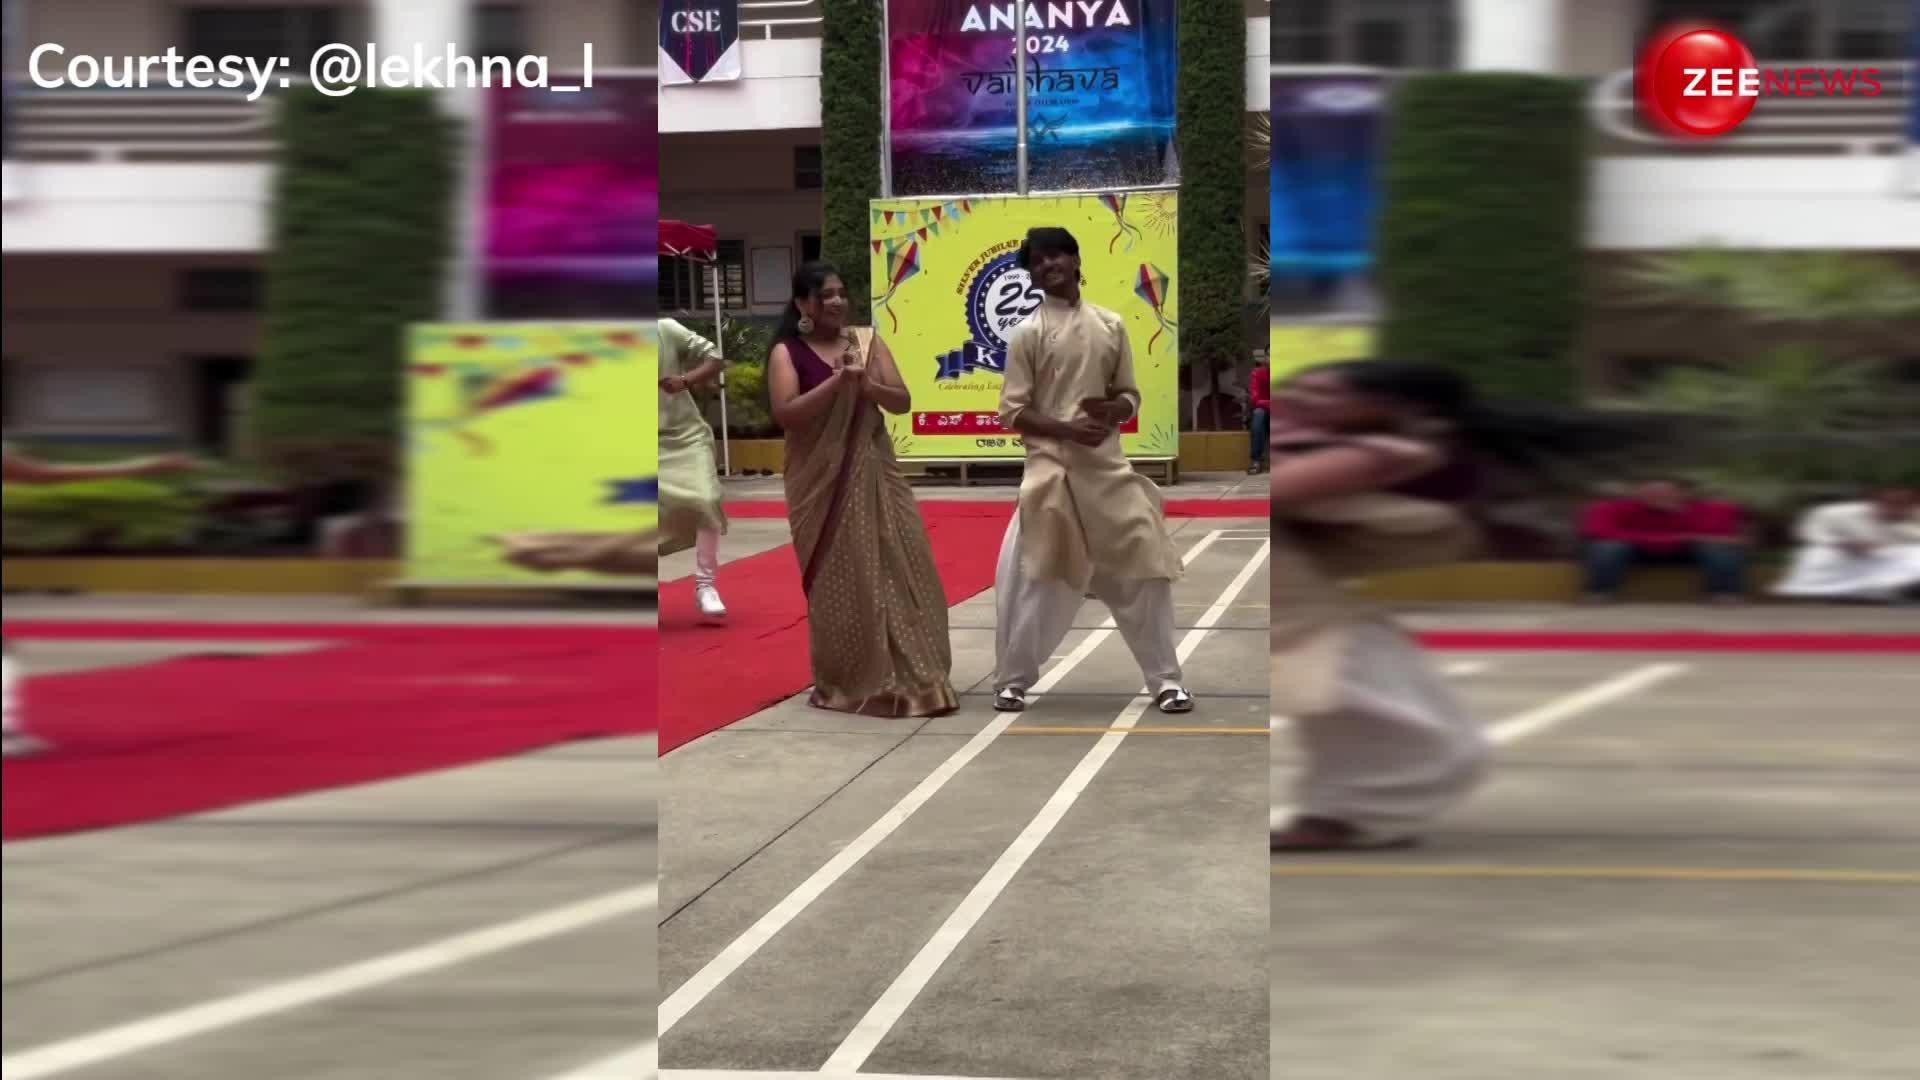 कॉलेज Students ने 'रांझणा' गाने पर किया धमाकेदार डांस, Video ने इंटरनेट पर मचाया धमाल